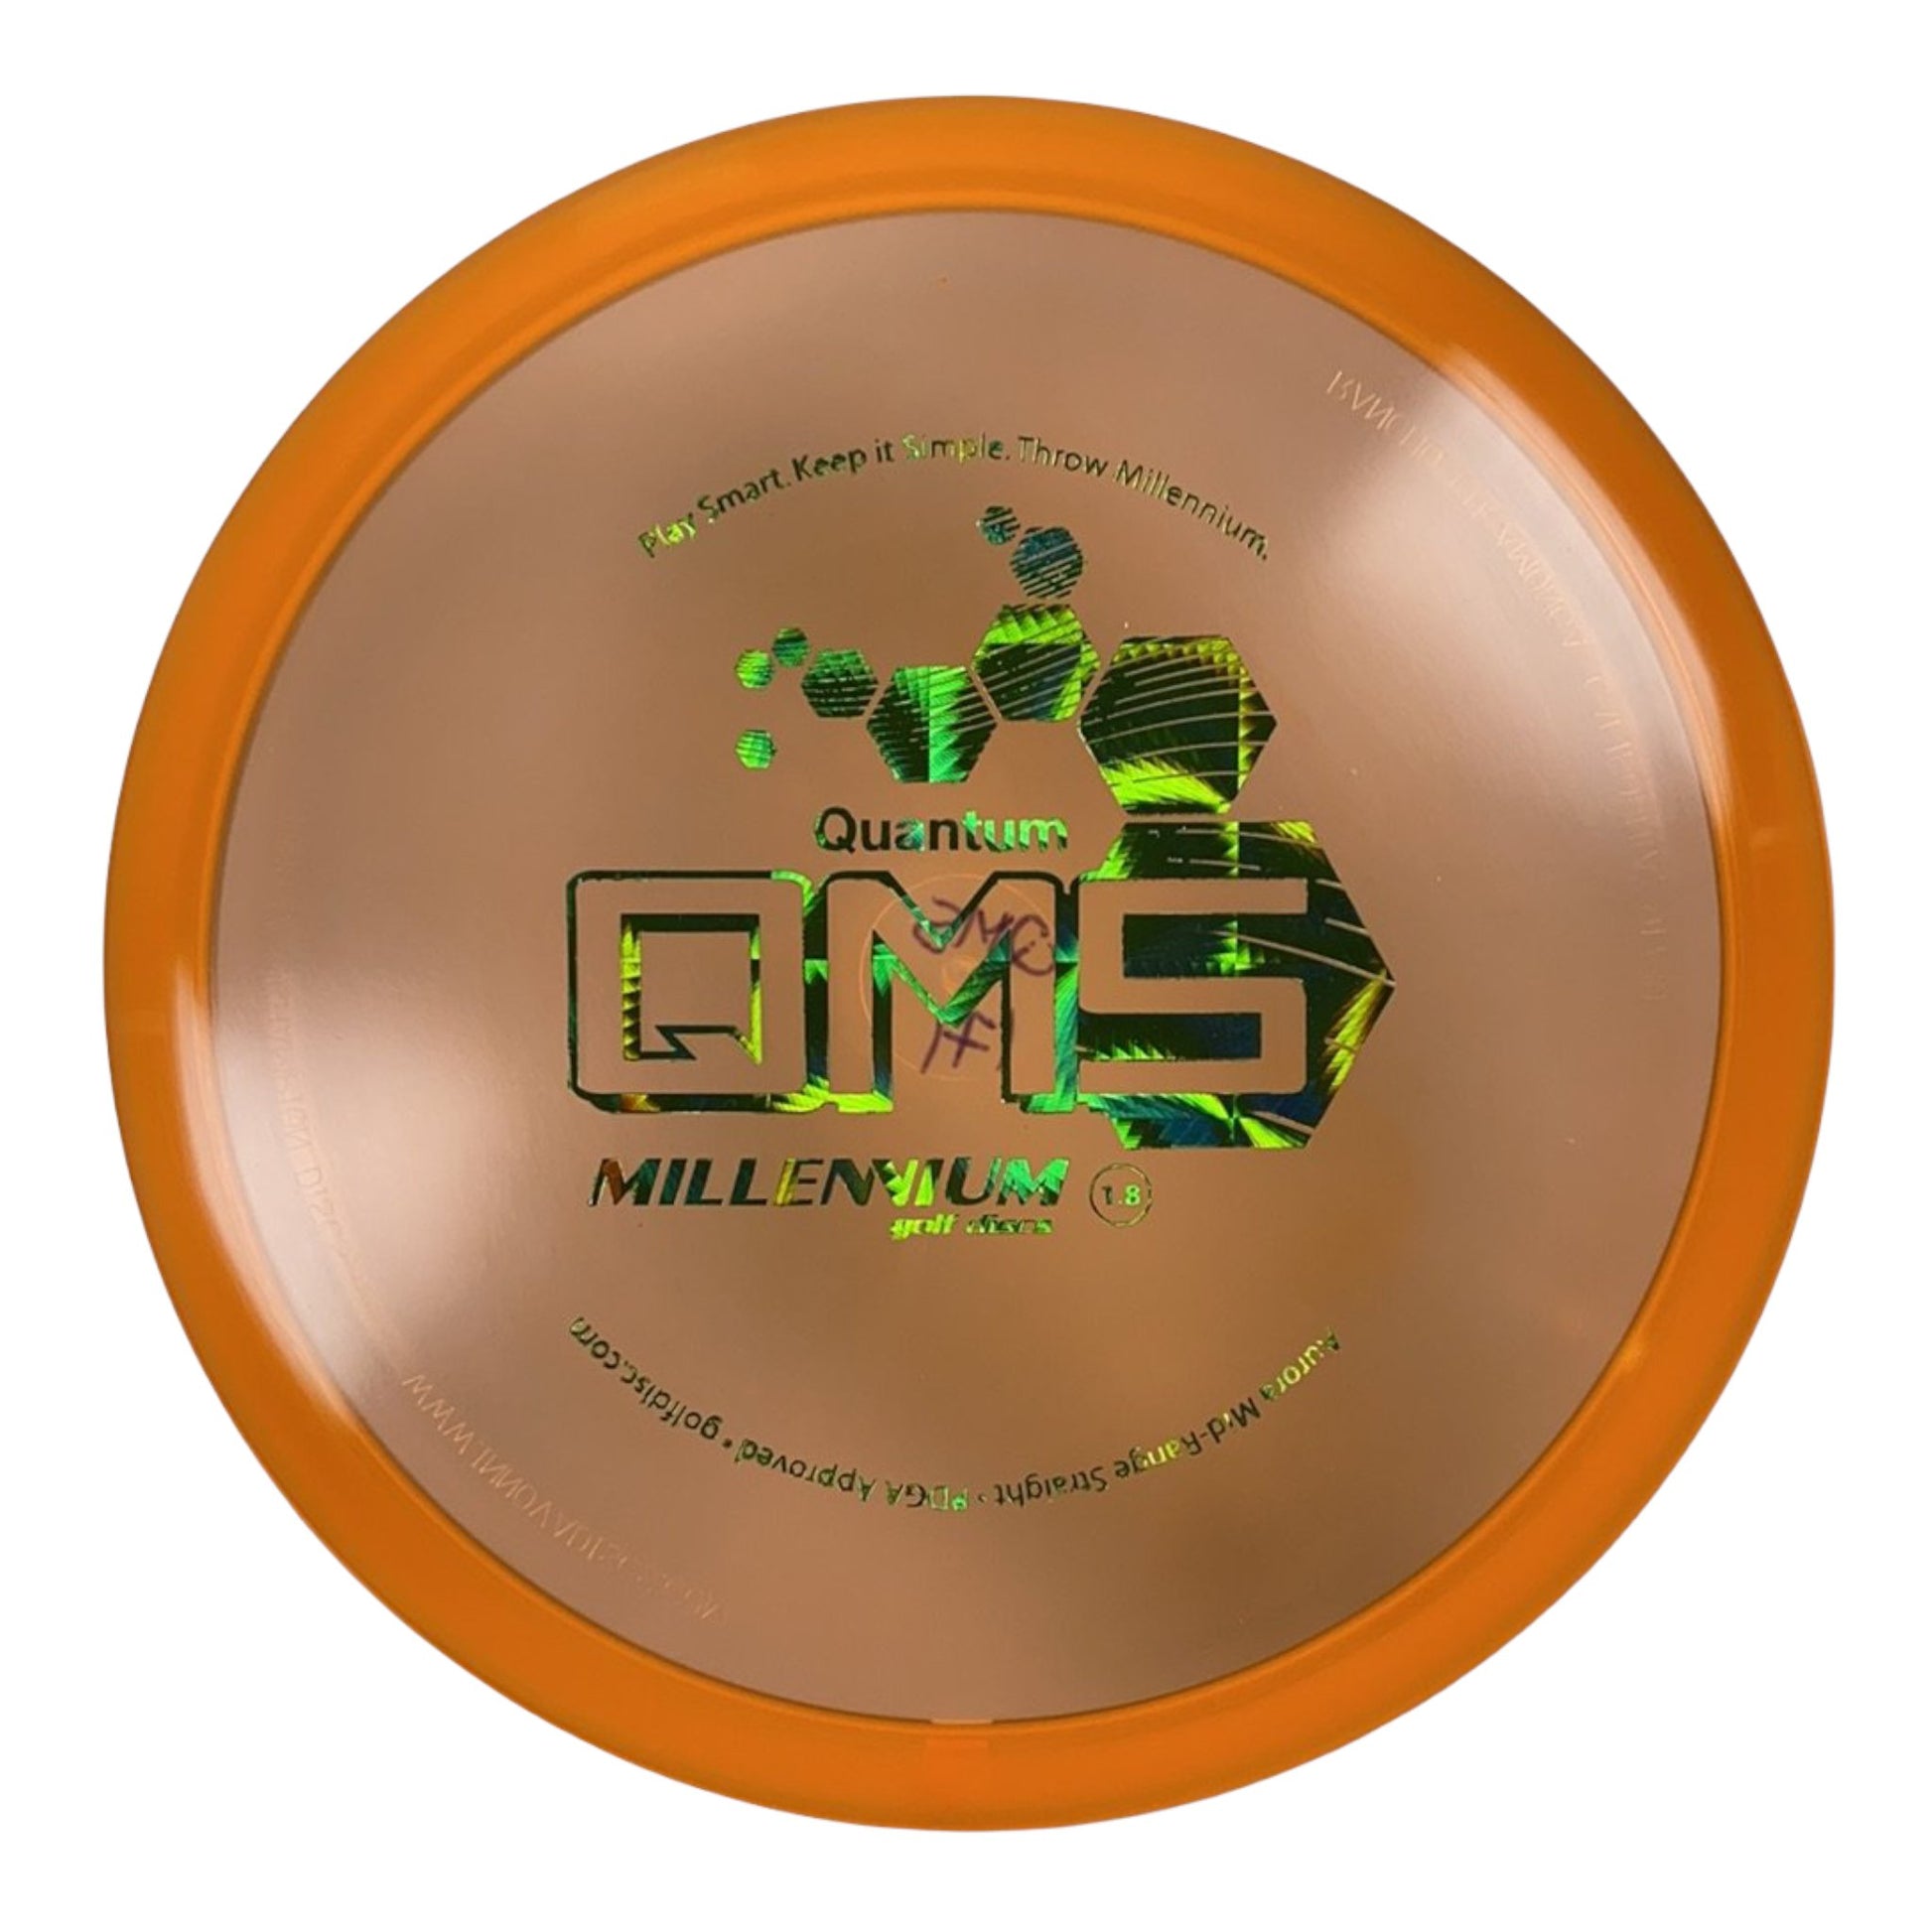 Millennium Golf Discs Aurora MS | Quantum | Orange/Green 171g Disc Golf